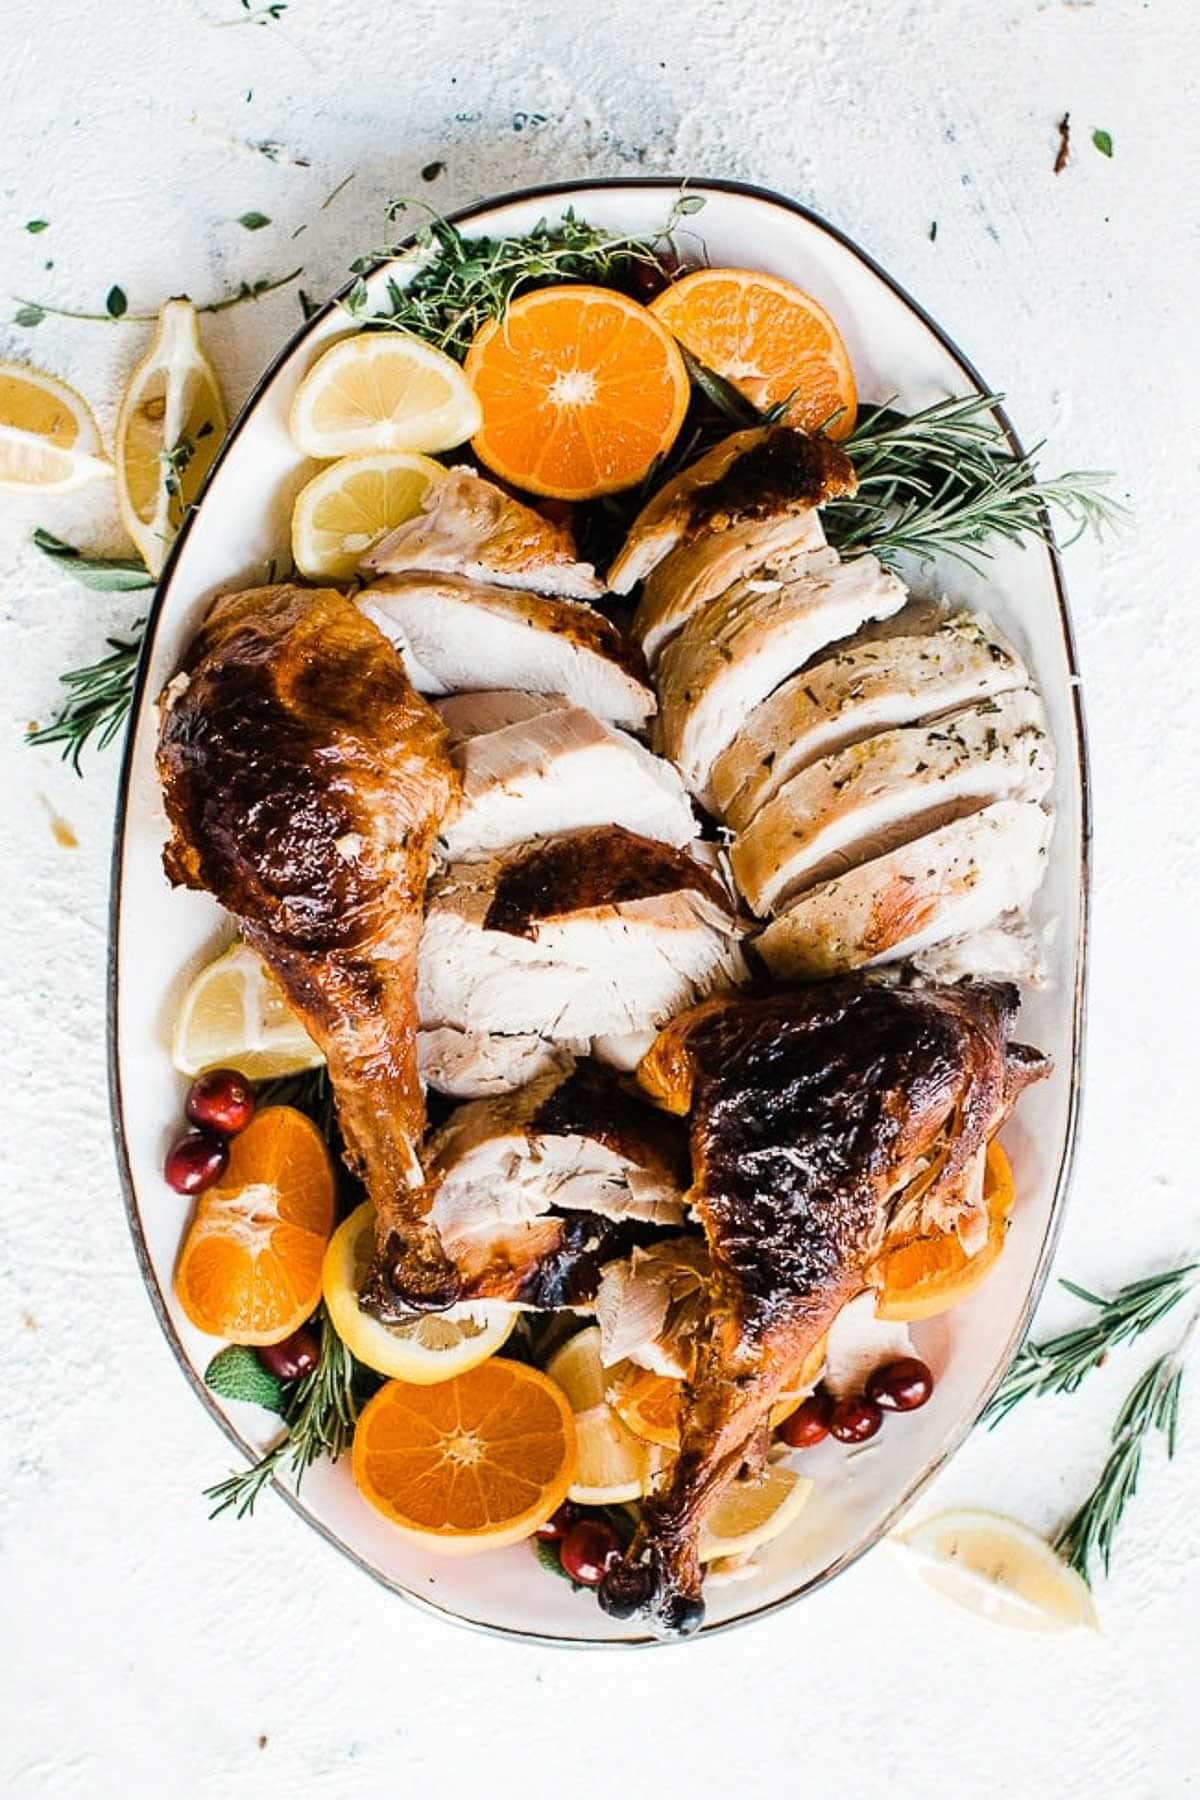 Carved turkey on a platter, garnished with oranges.